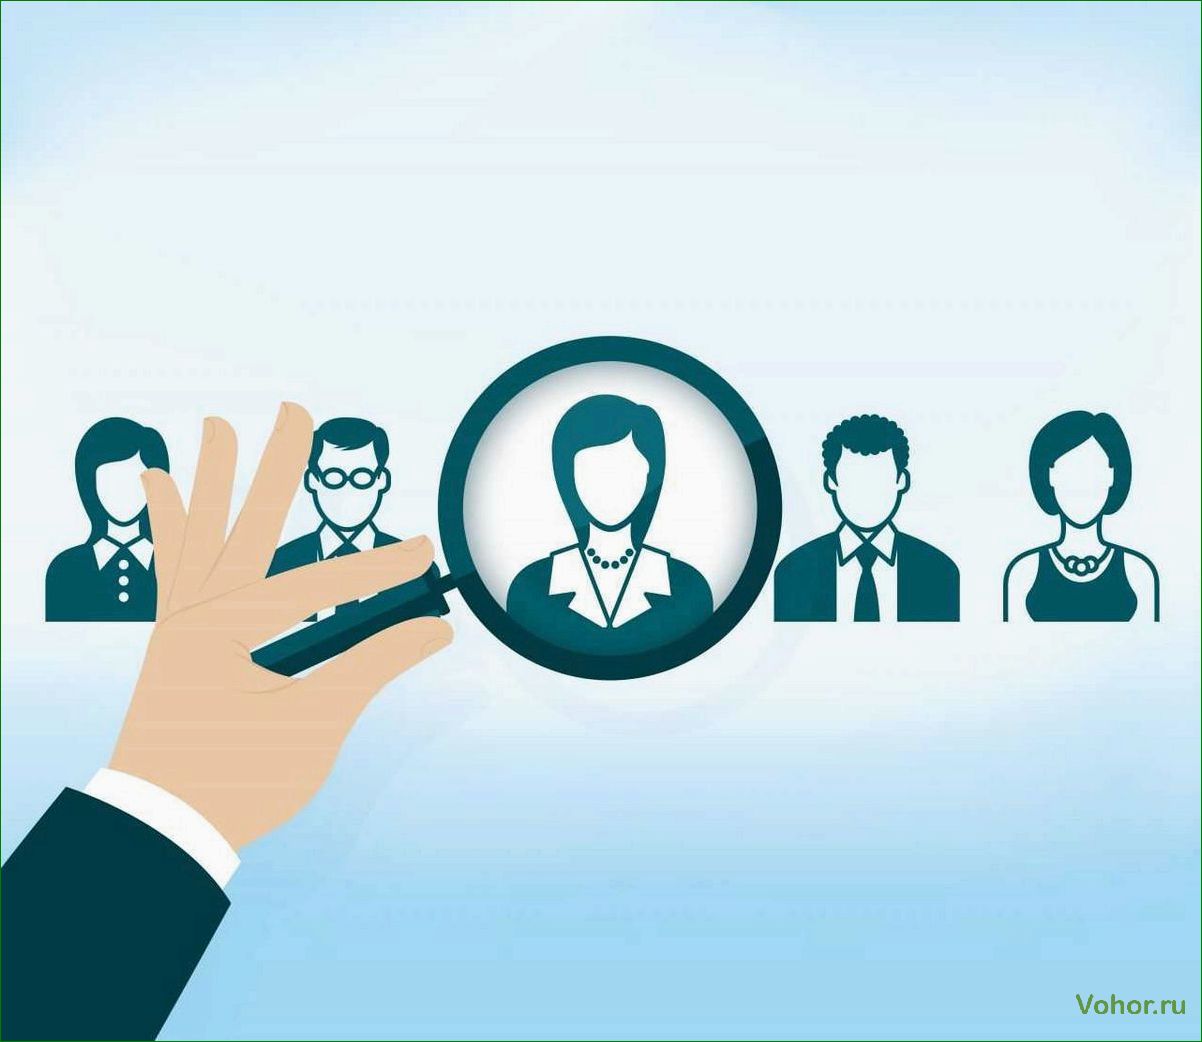 Услуги кадрового агентства: как найти идеальных сотрудников для вашего бизнеса.